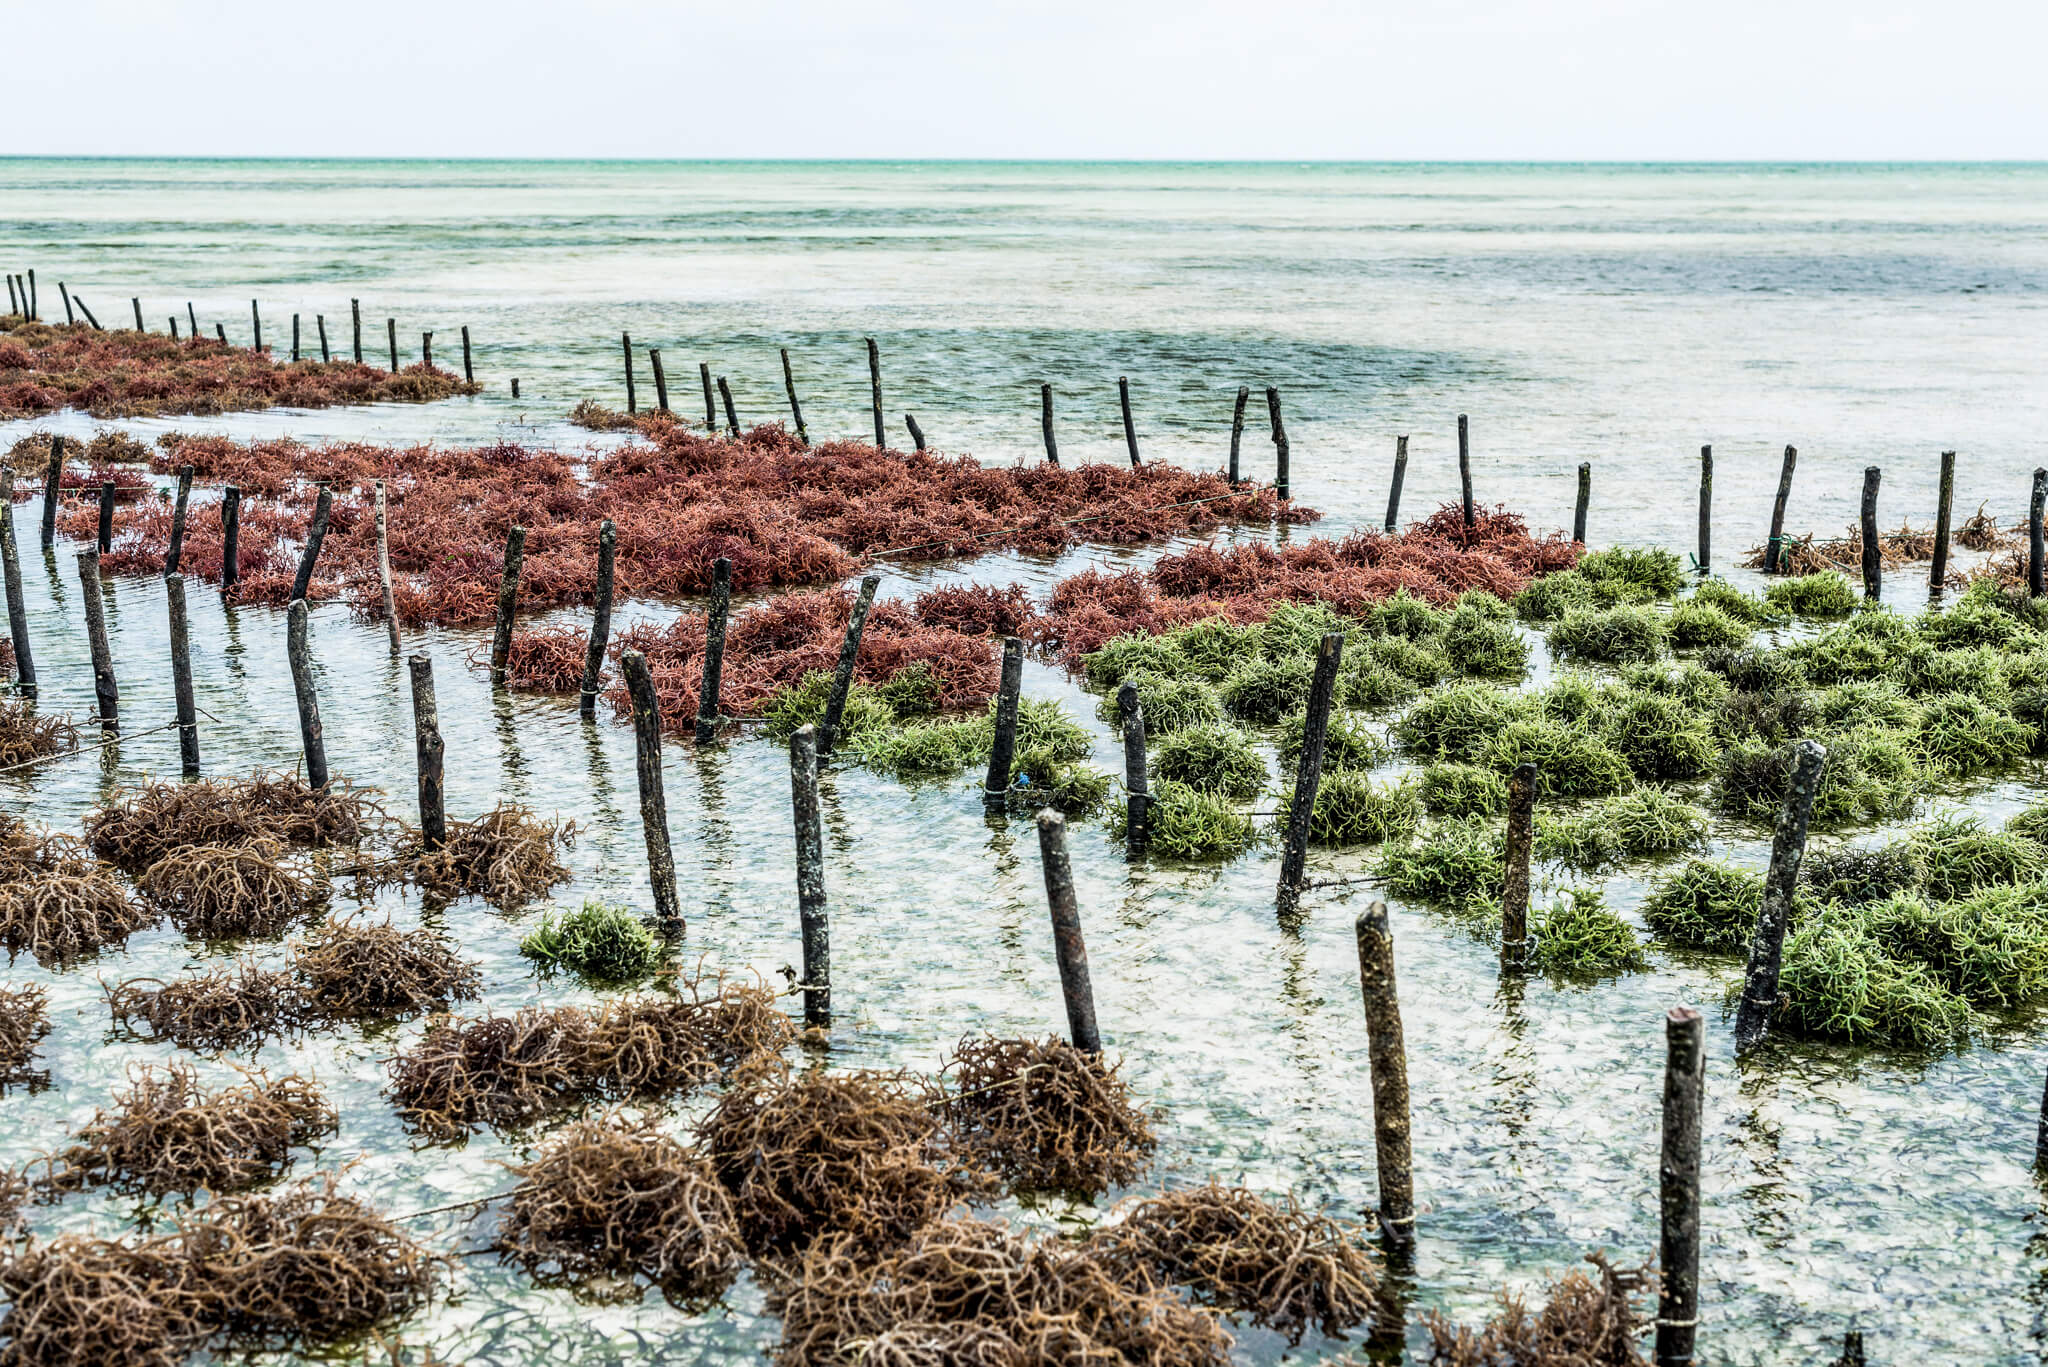 So wir das Superfood Algen an der Küste gezüchtet 